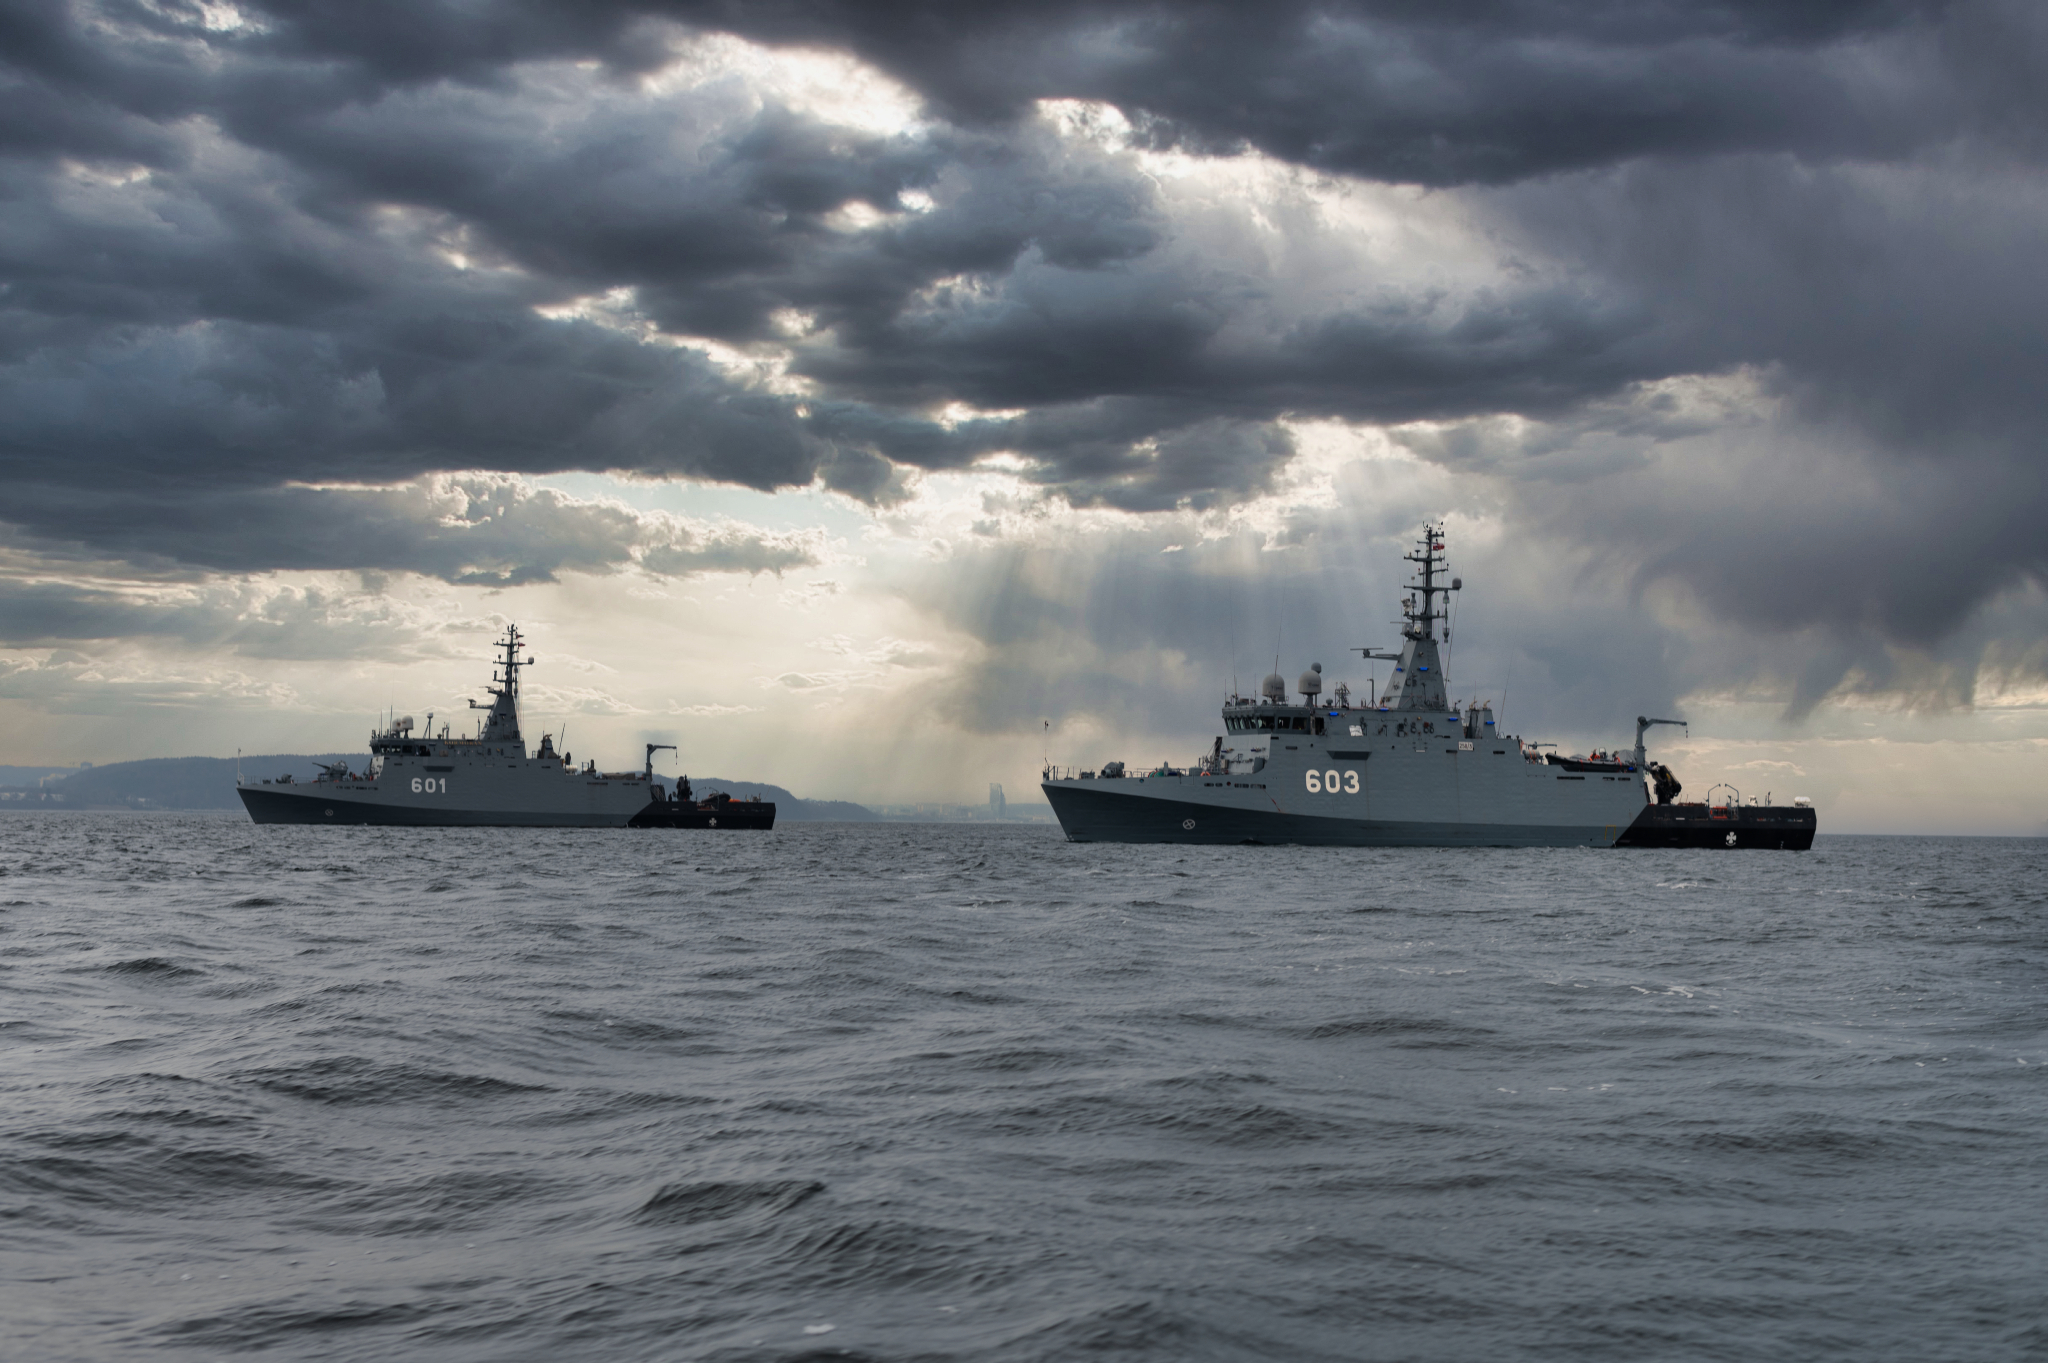 Мінні тральщики MEWA ВМС Польщі з бортовими номерами 601 та 603 Фото: ВМС Польщі